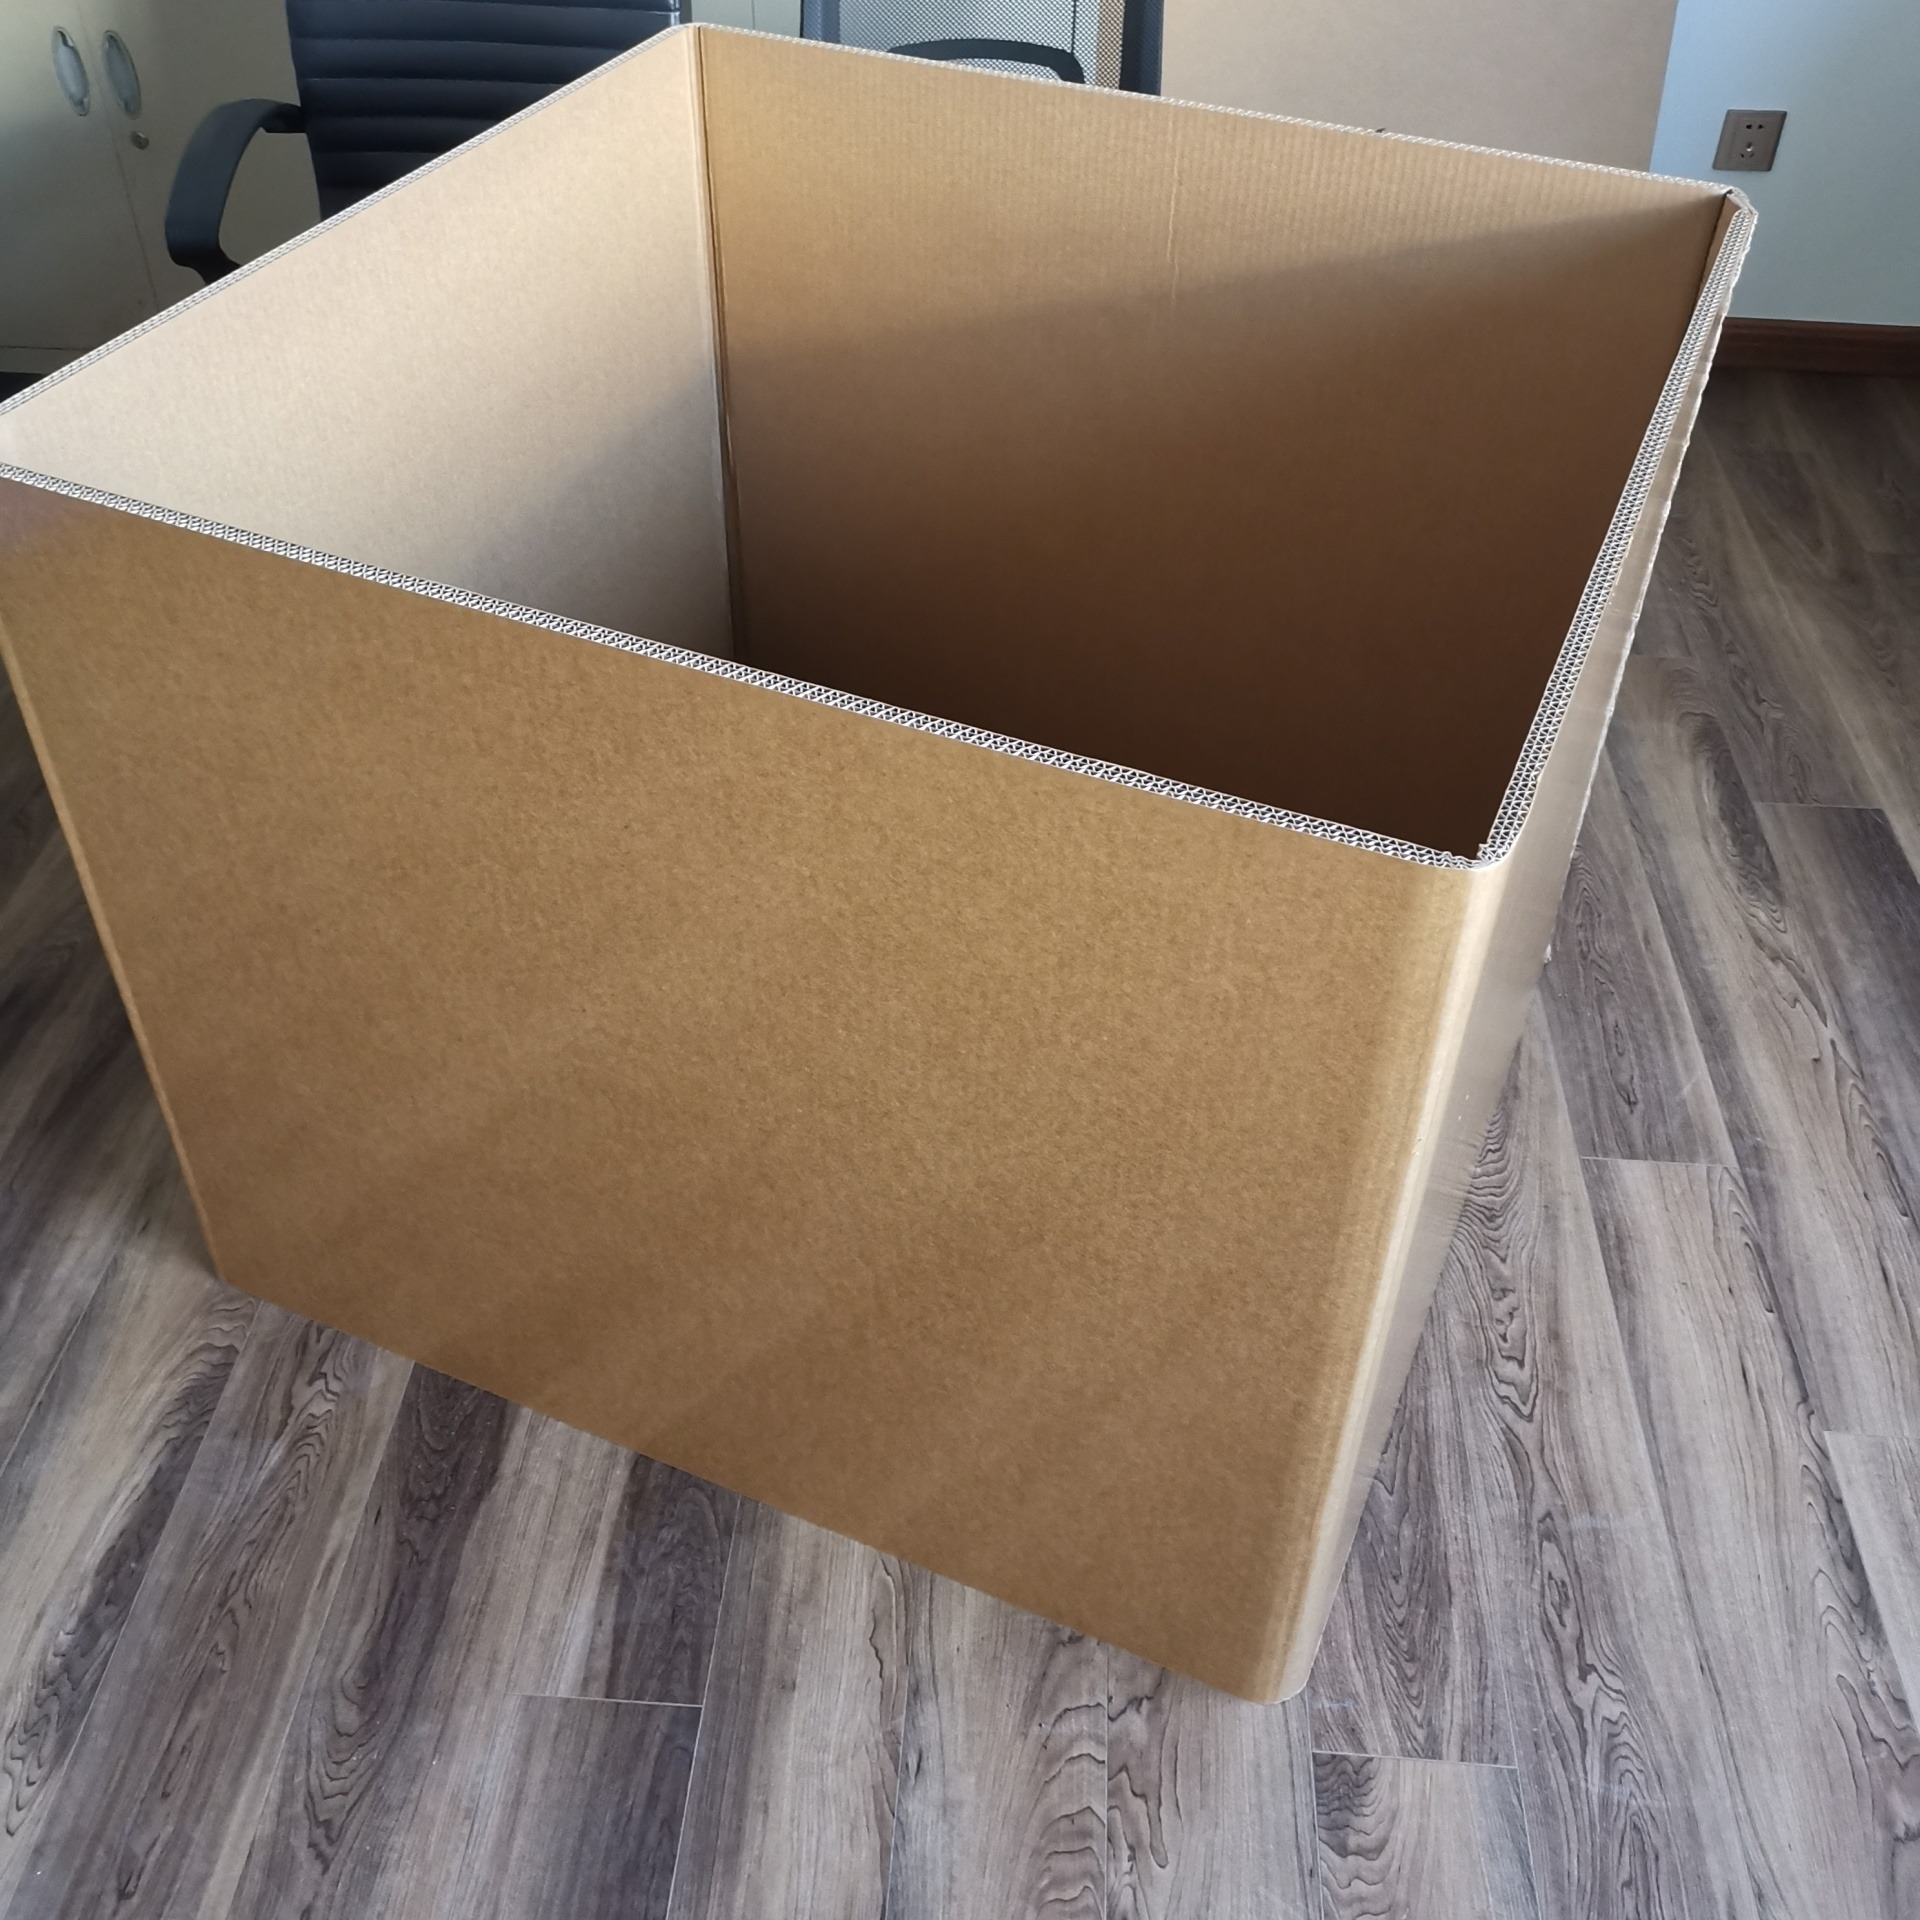 重型包包装箱 用于工具箱收纳箱 物流包装 京东龙达图片